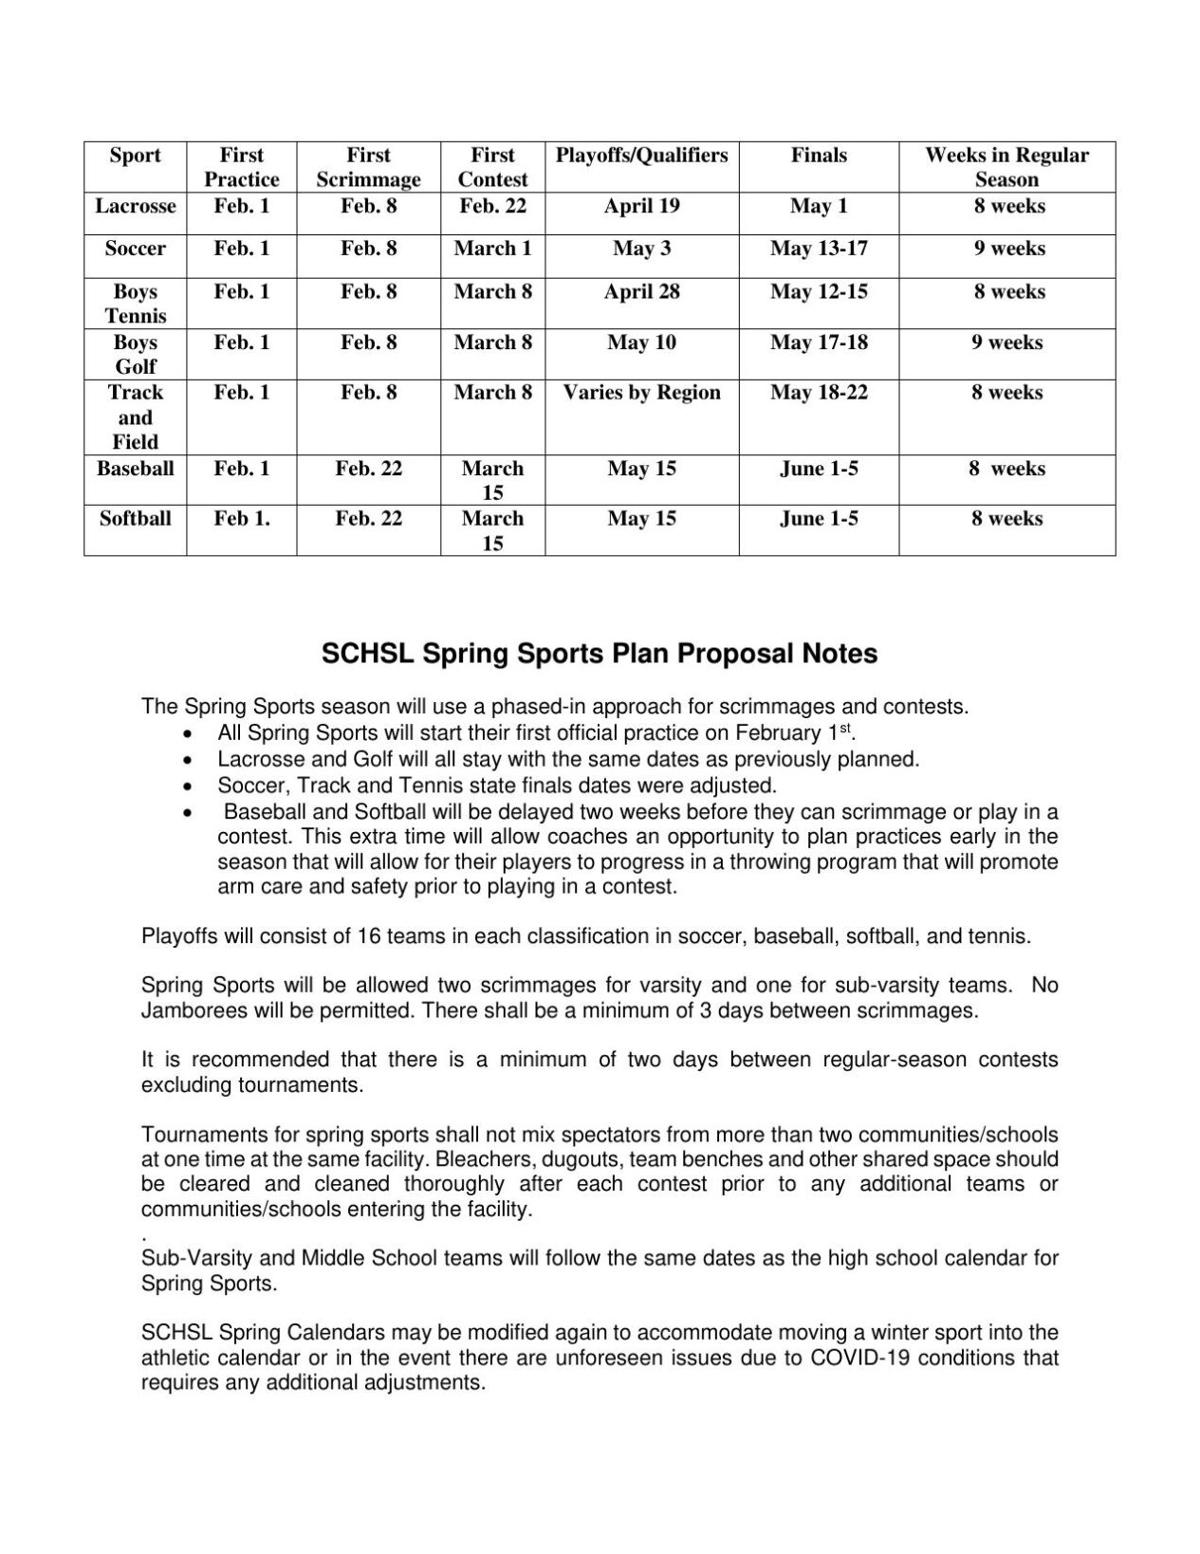 SCHSL Spring Sports Schedule